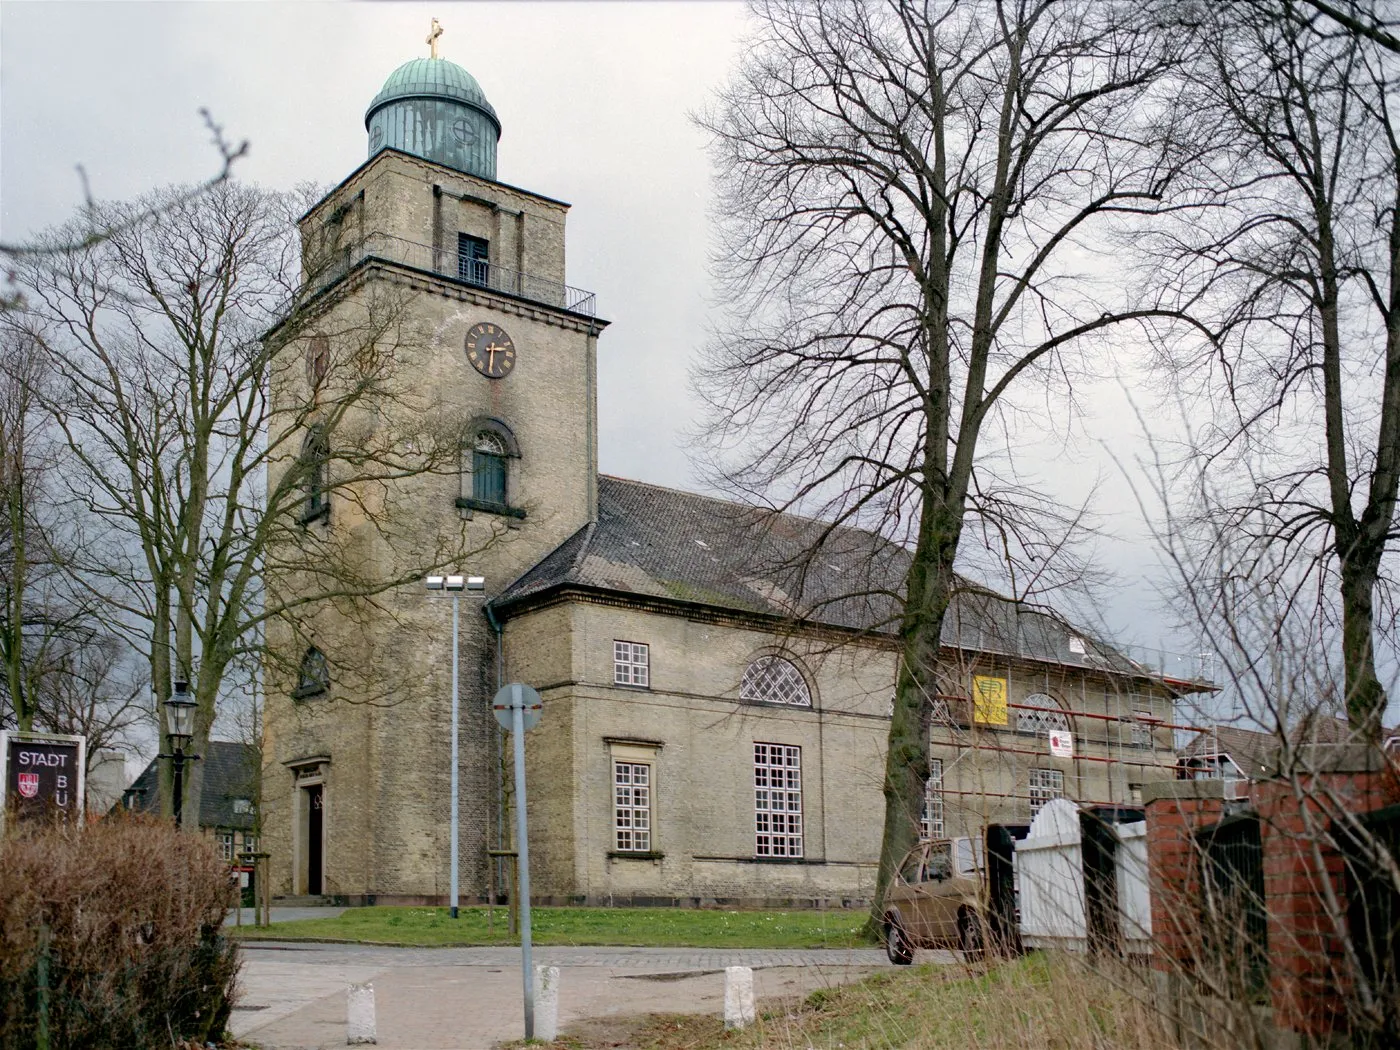 Bild von Schleswig-Holstein